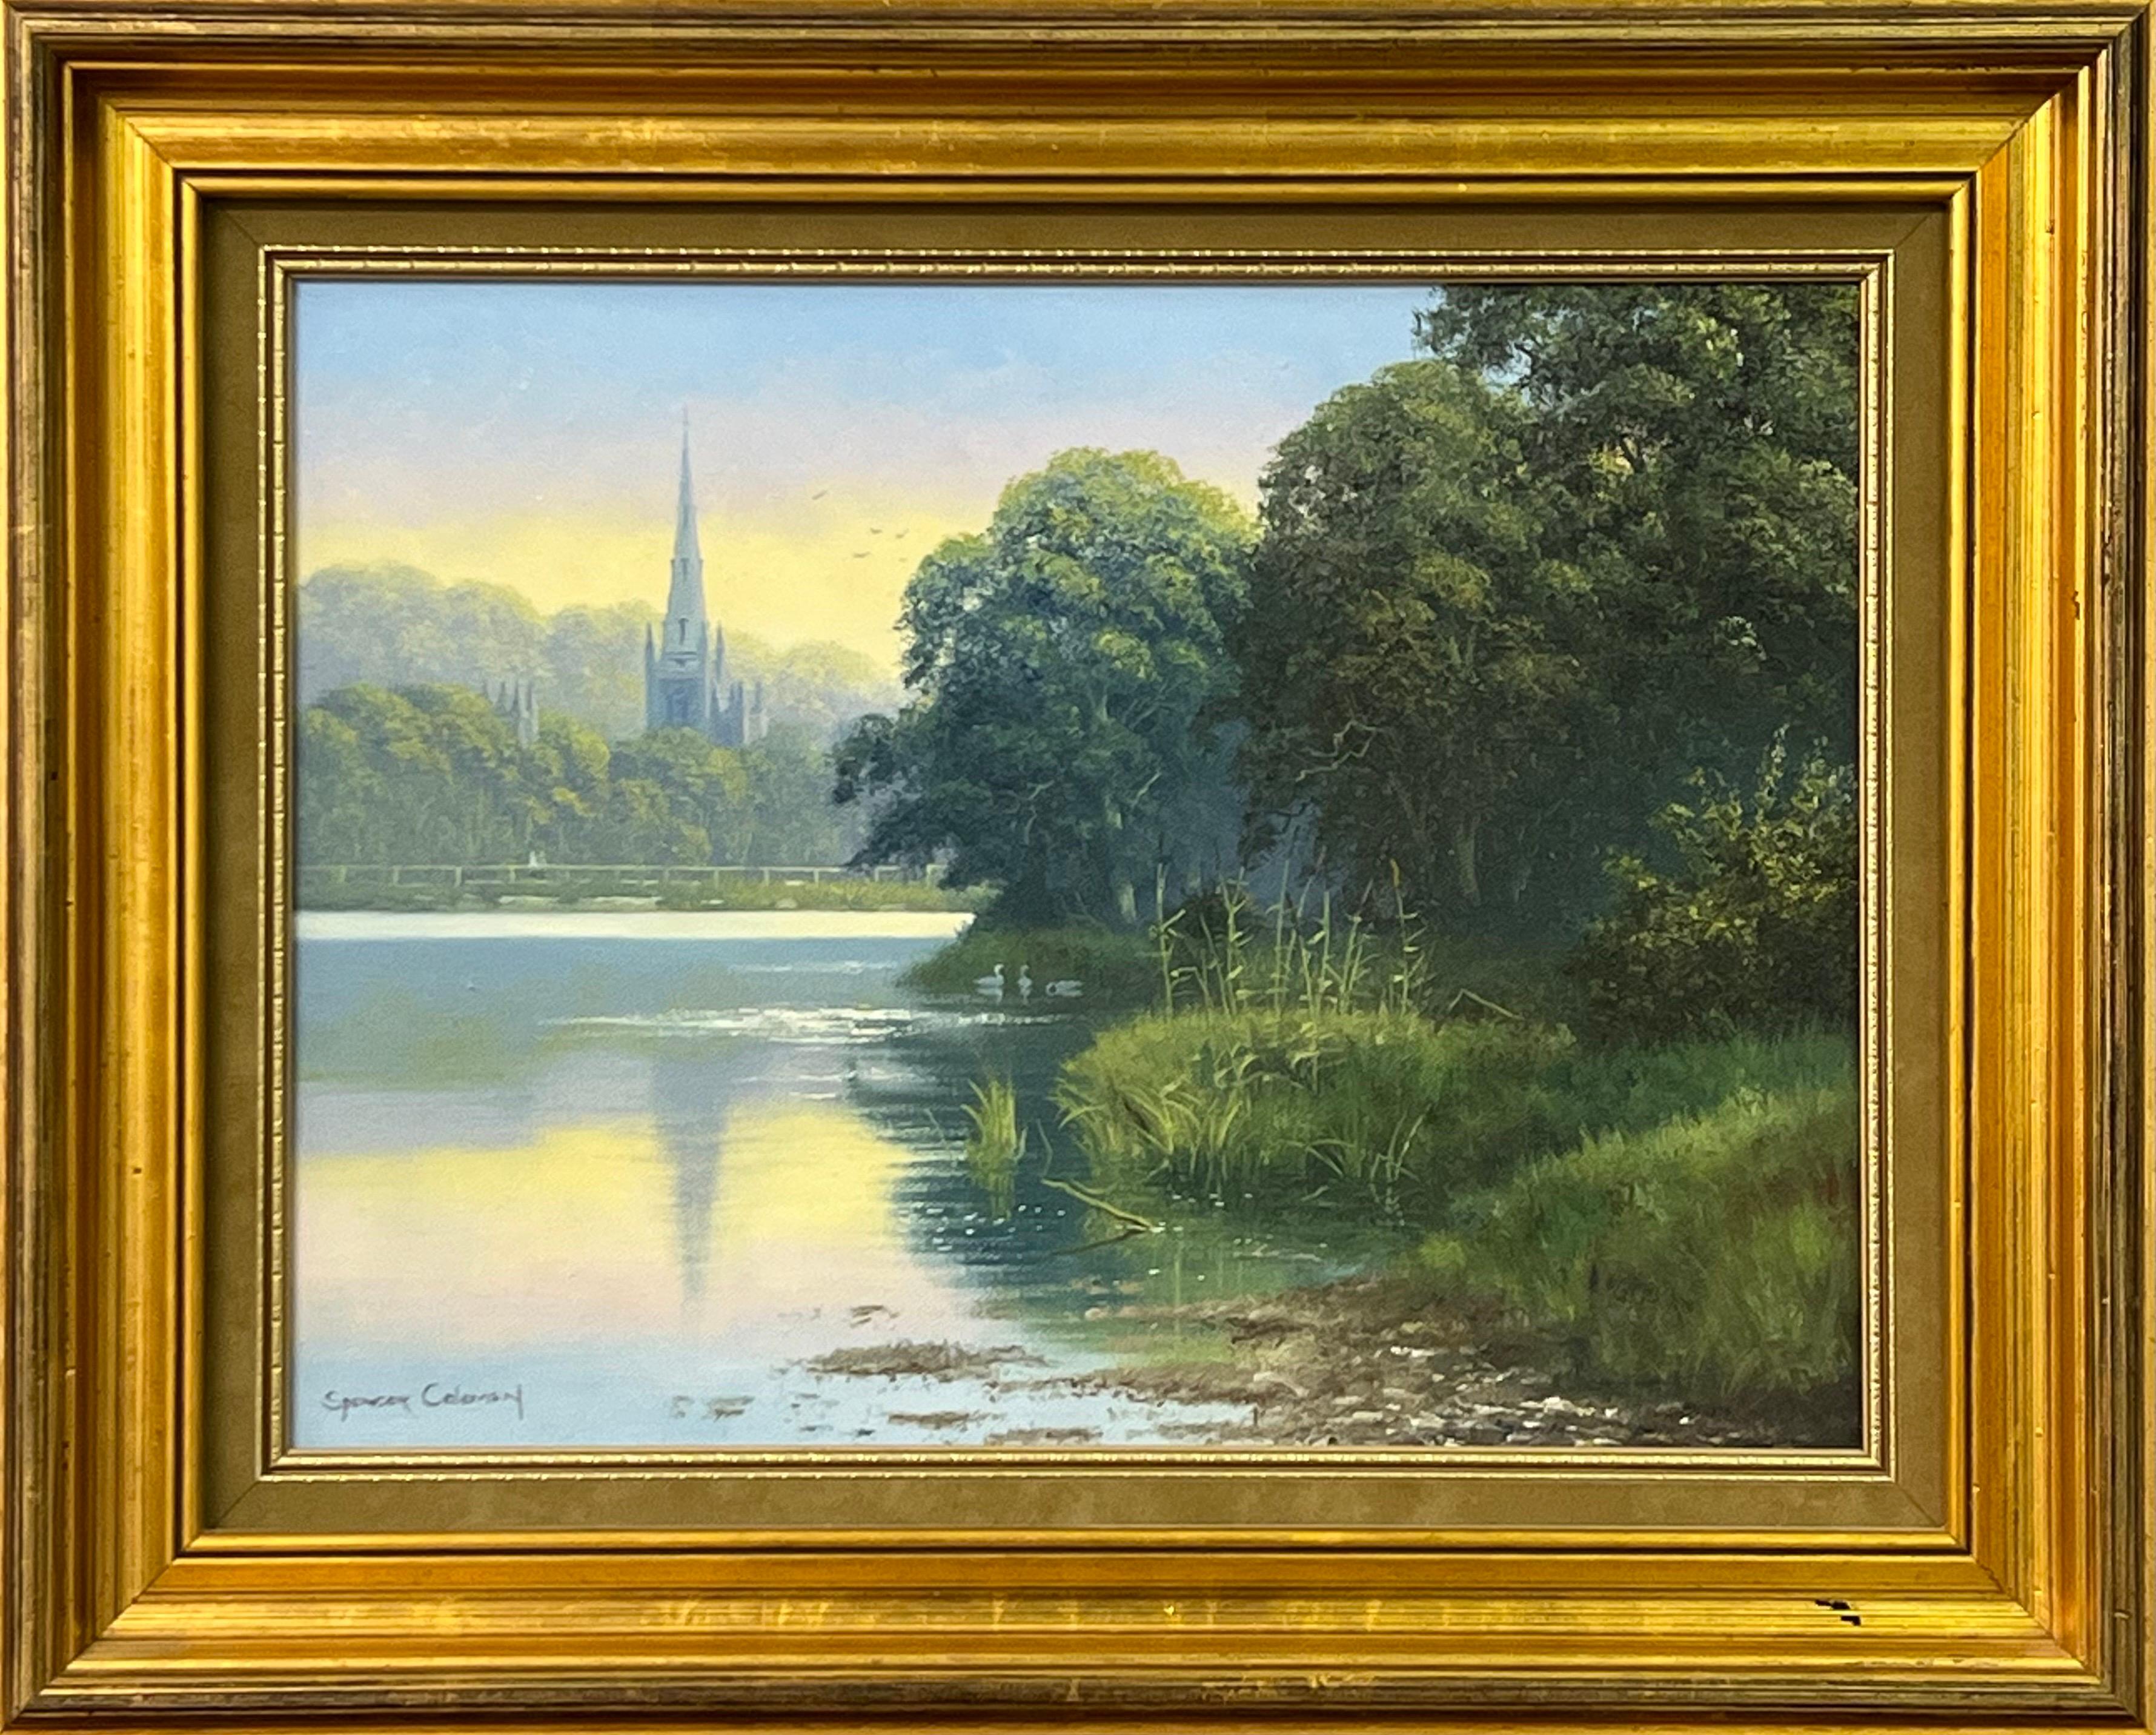 Gemälde einer ländlichen irischen Landschaft mit Swan Lake & Church's Reflections (Braun), Animal Painting, von Spencer Coleman